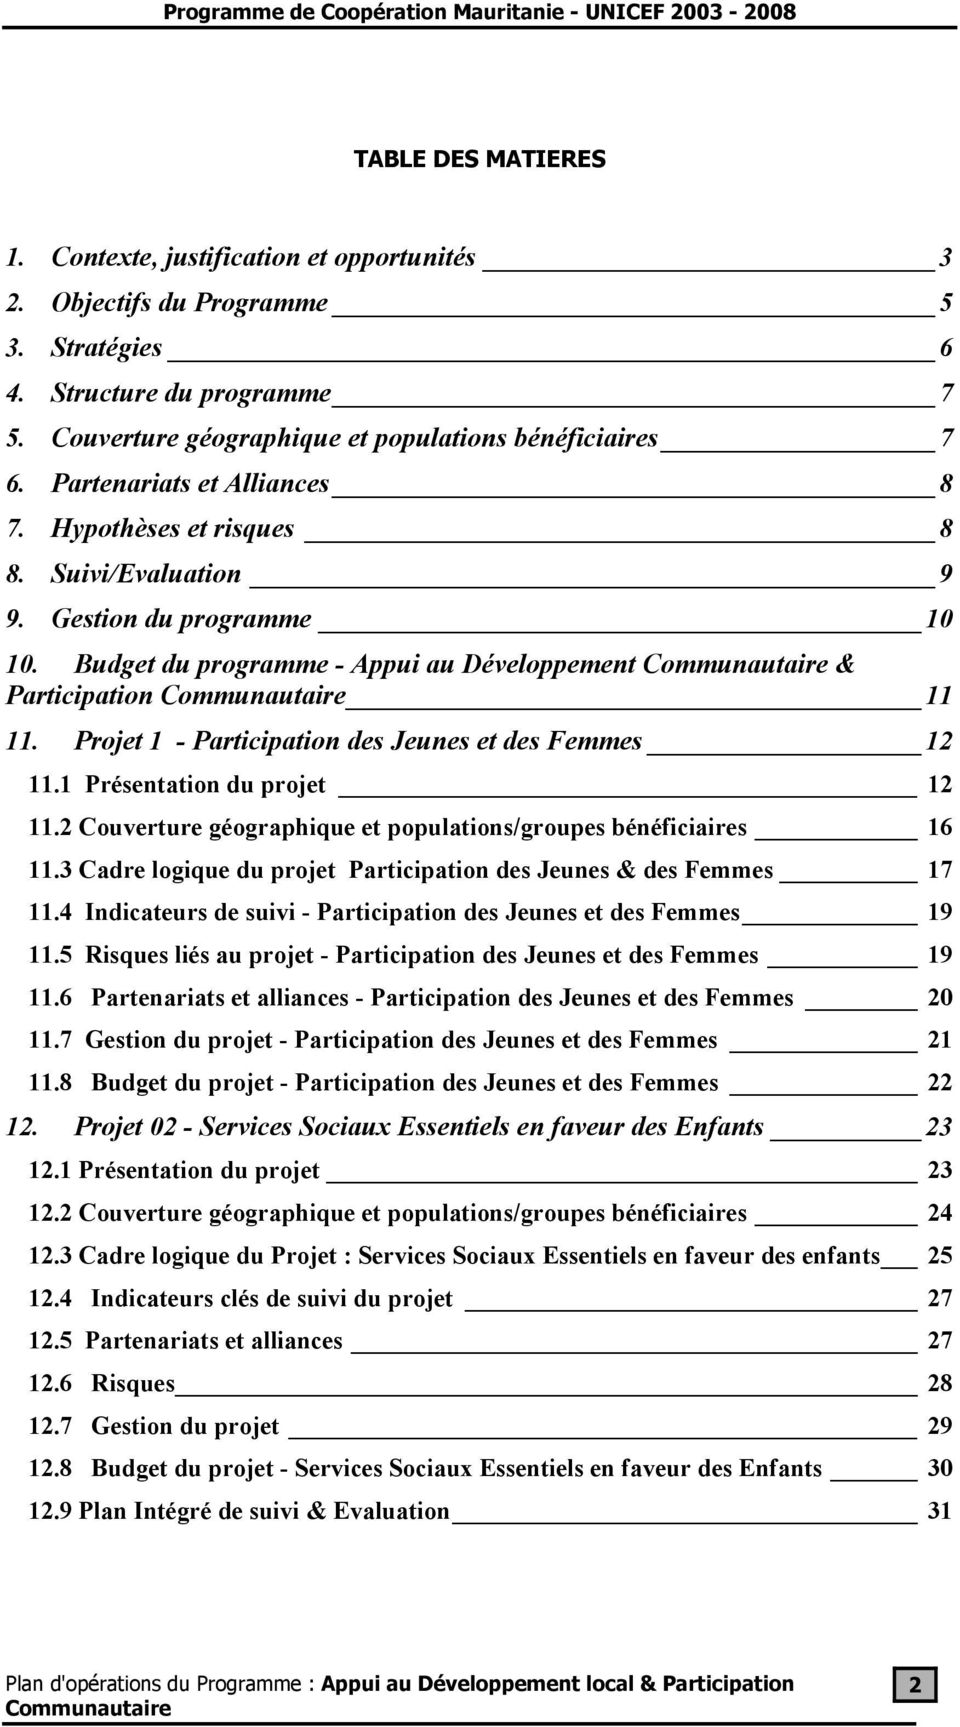 Projet 1 - Participation des Jeunes et des Femmes 12 11.1 Présentation du projet 12 11.2 Couverture géographique et populations/groupes bénéficiaires 16 11.